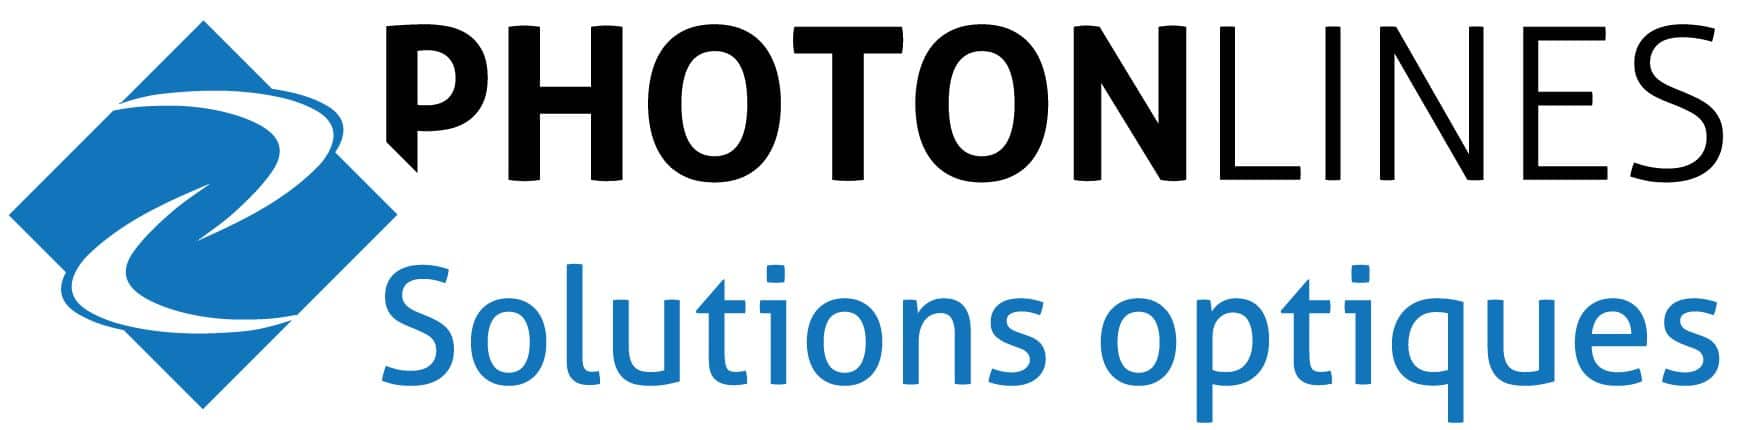 logo-photonlines-solutions-optiques limite